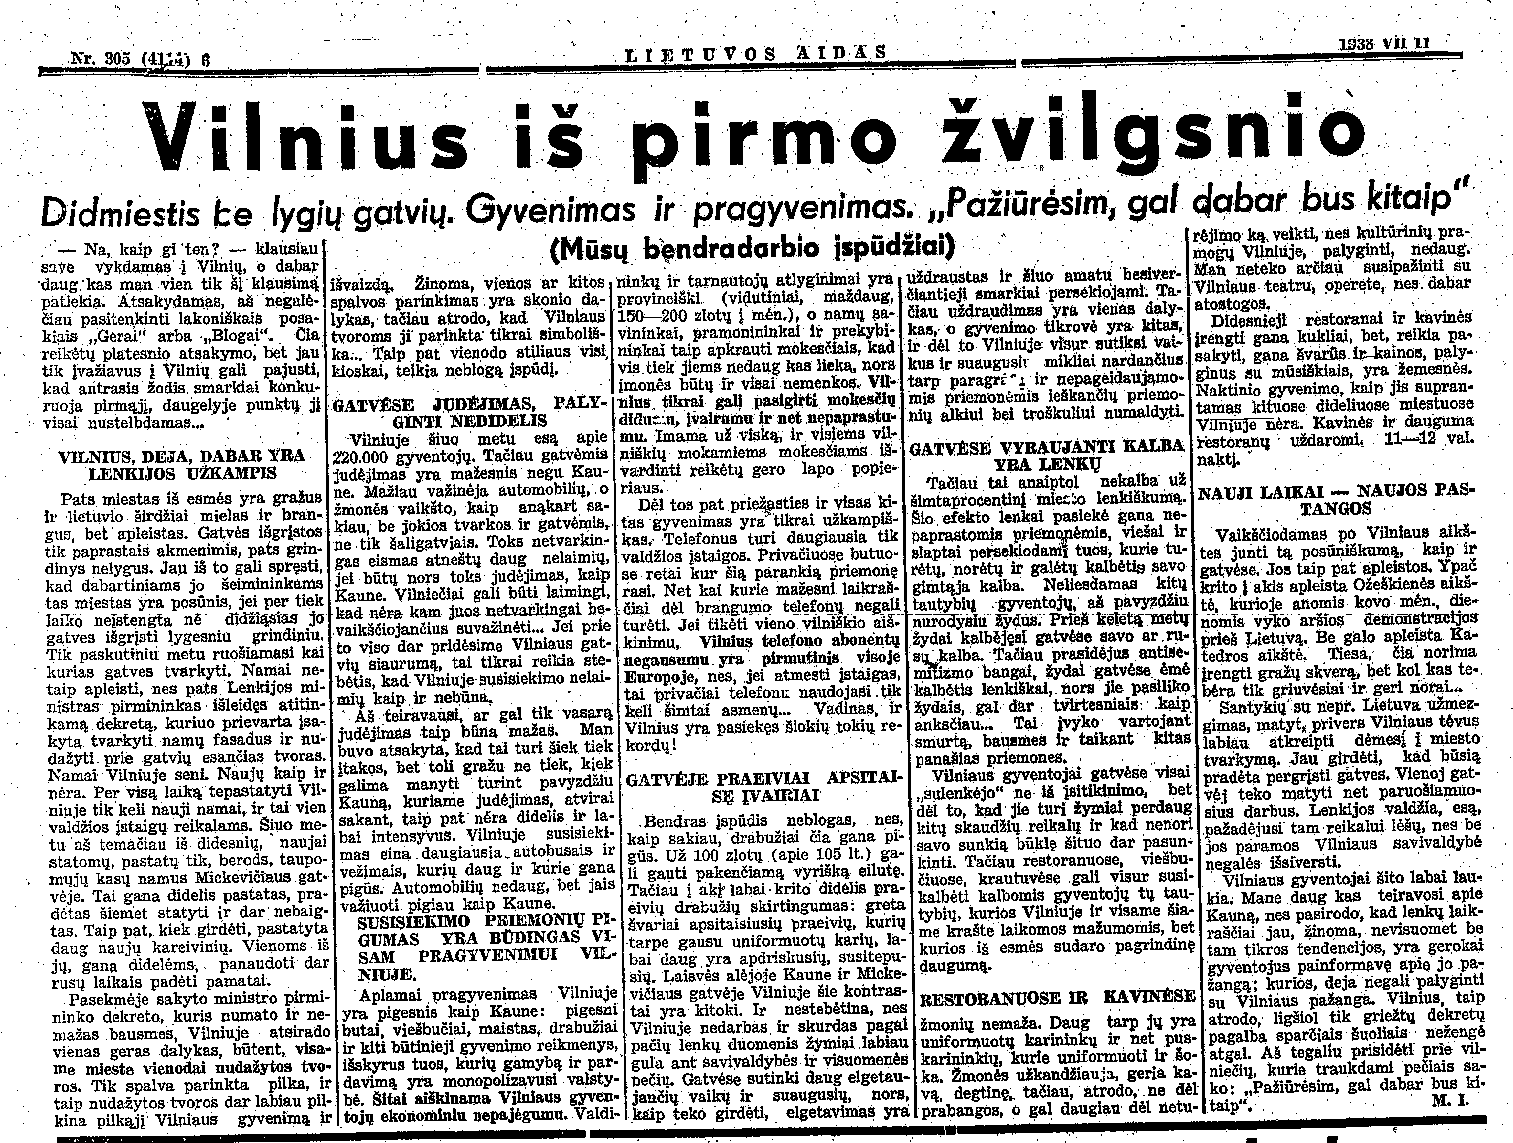 Vilnius iš pirmo žvilgsnio